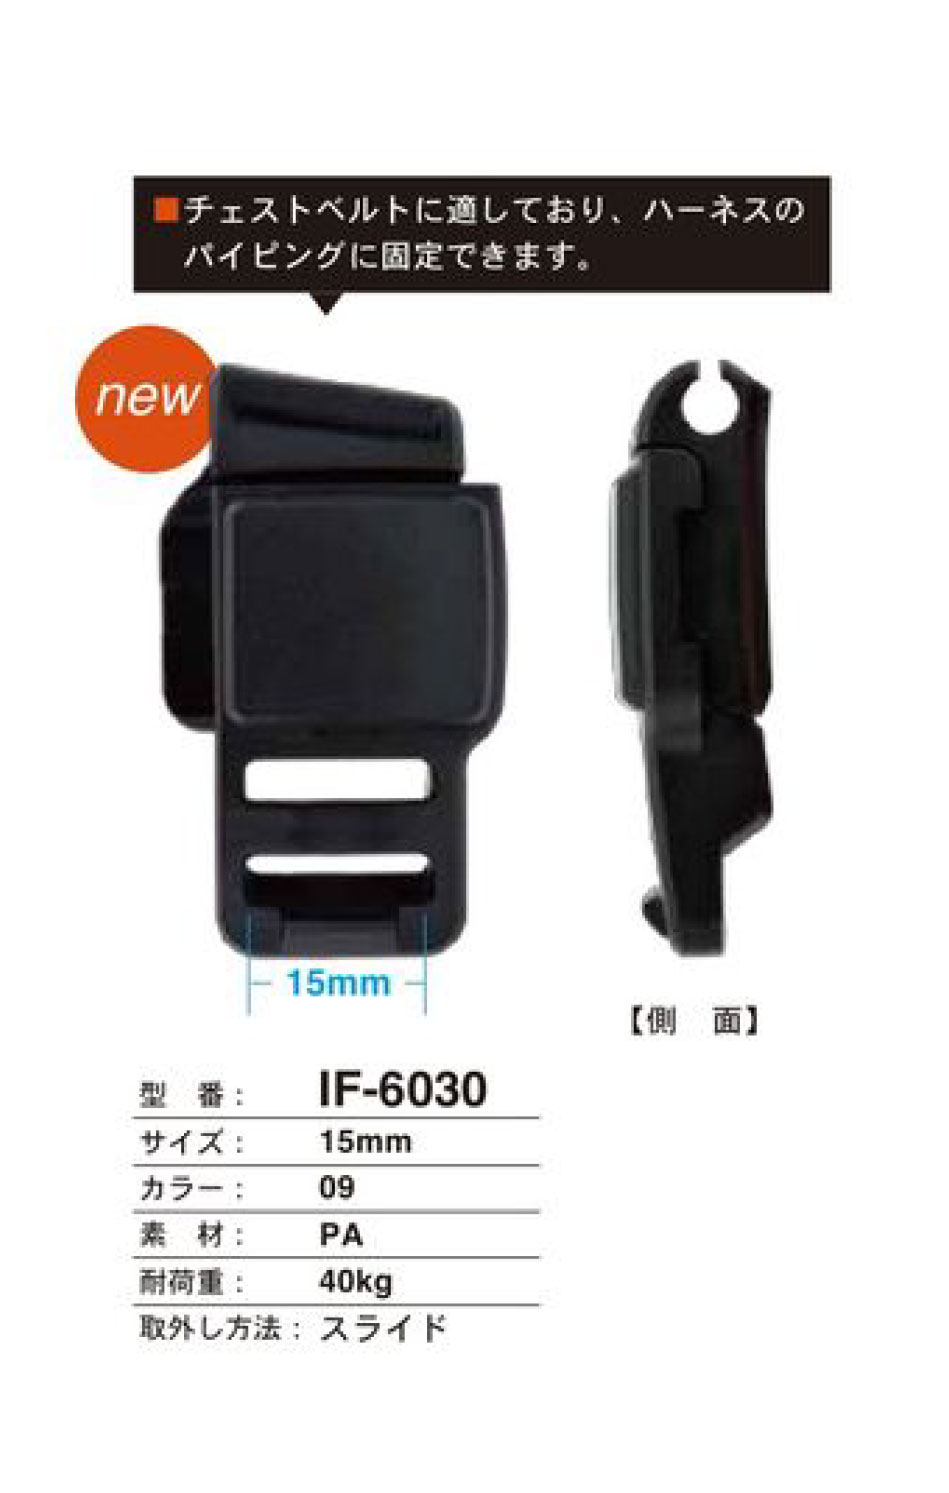 IF-6030 Fibbia Per Cintura Sul Petto Da 15 MmMM[Fibbie E Anello] FIDLOCK